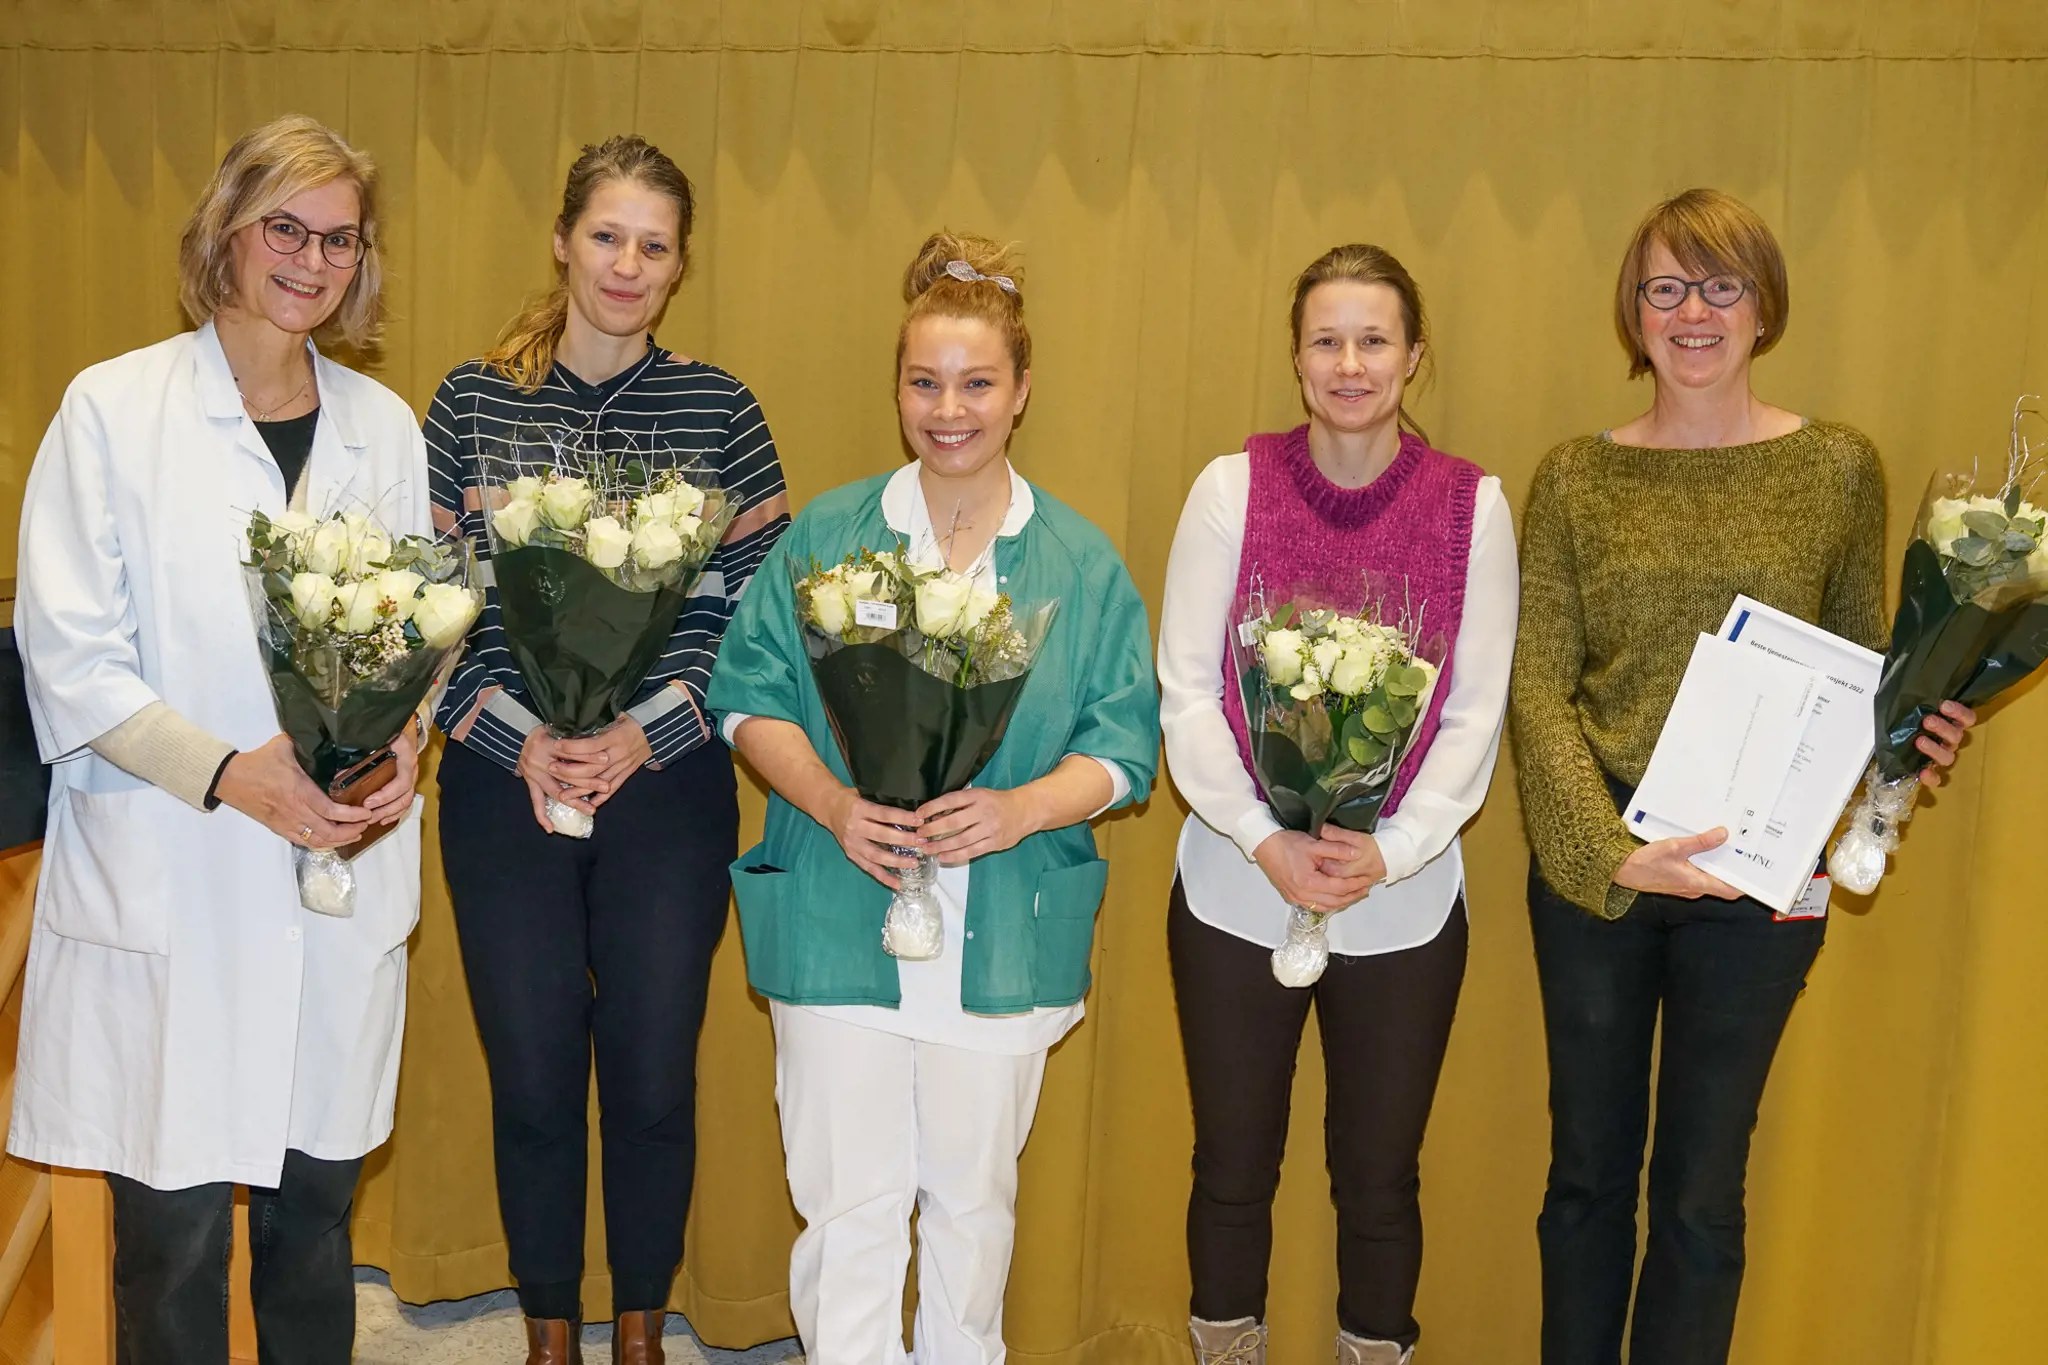 Bilde av vinnere fra øyeavdelingen med blomster etter mottakelsen av prisen for Beste tjenesteinnovasjonsprosjekt.